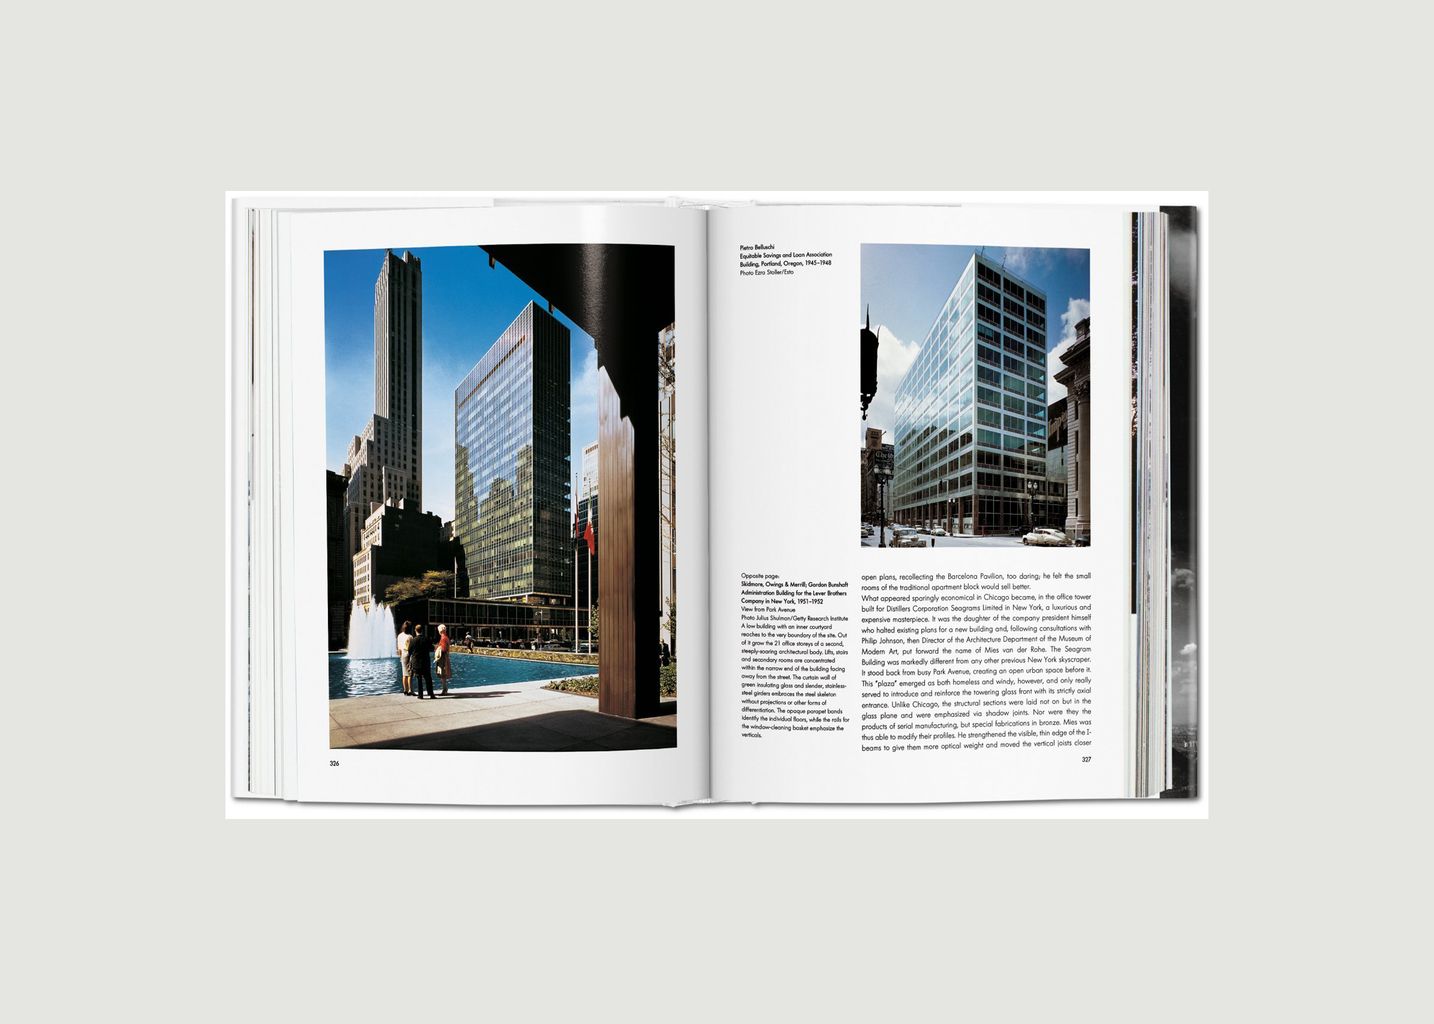 Buch Architektur des 20. Jahrhunderts - Taschen